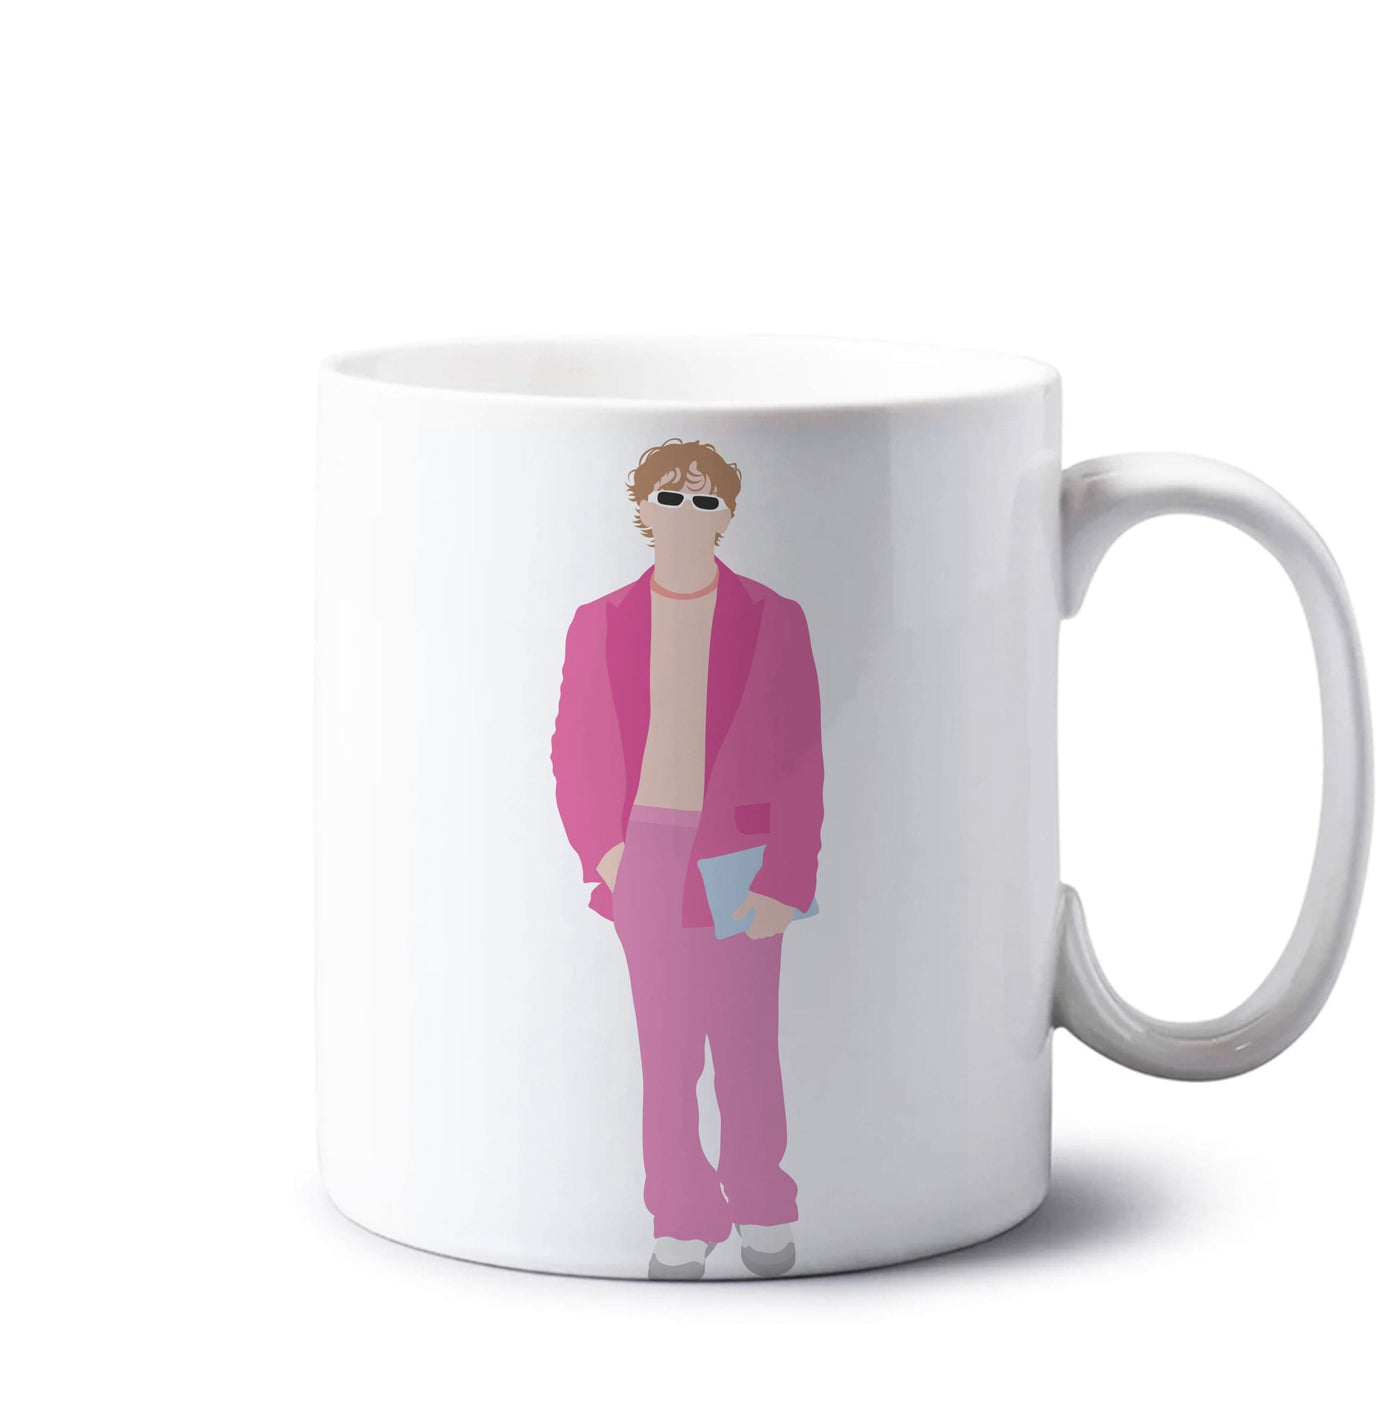 Pink Suit - Vinnie Hacker Mug